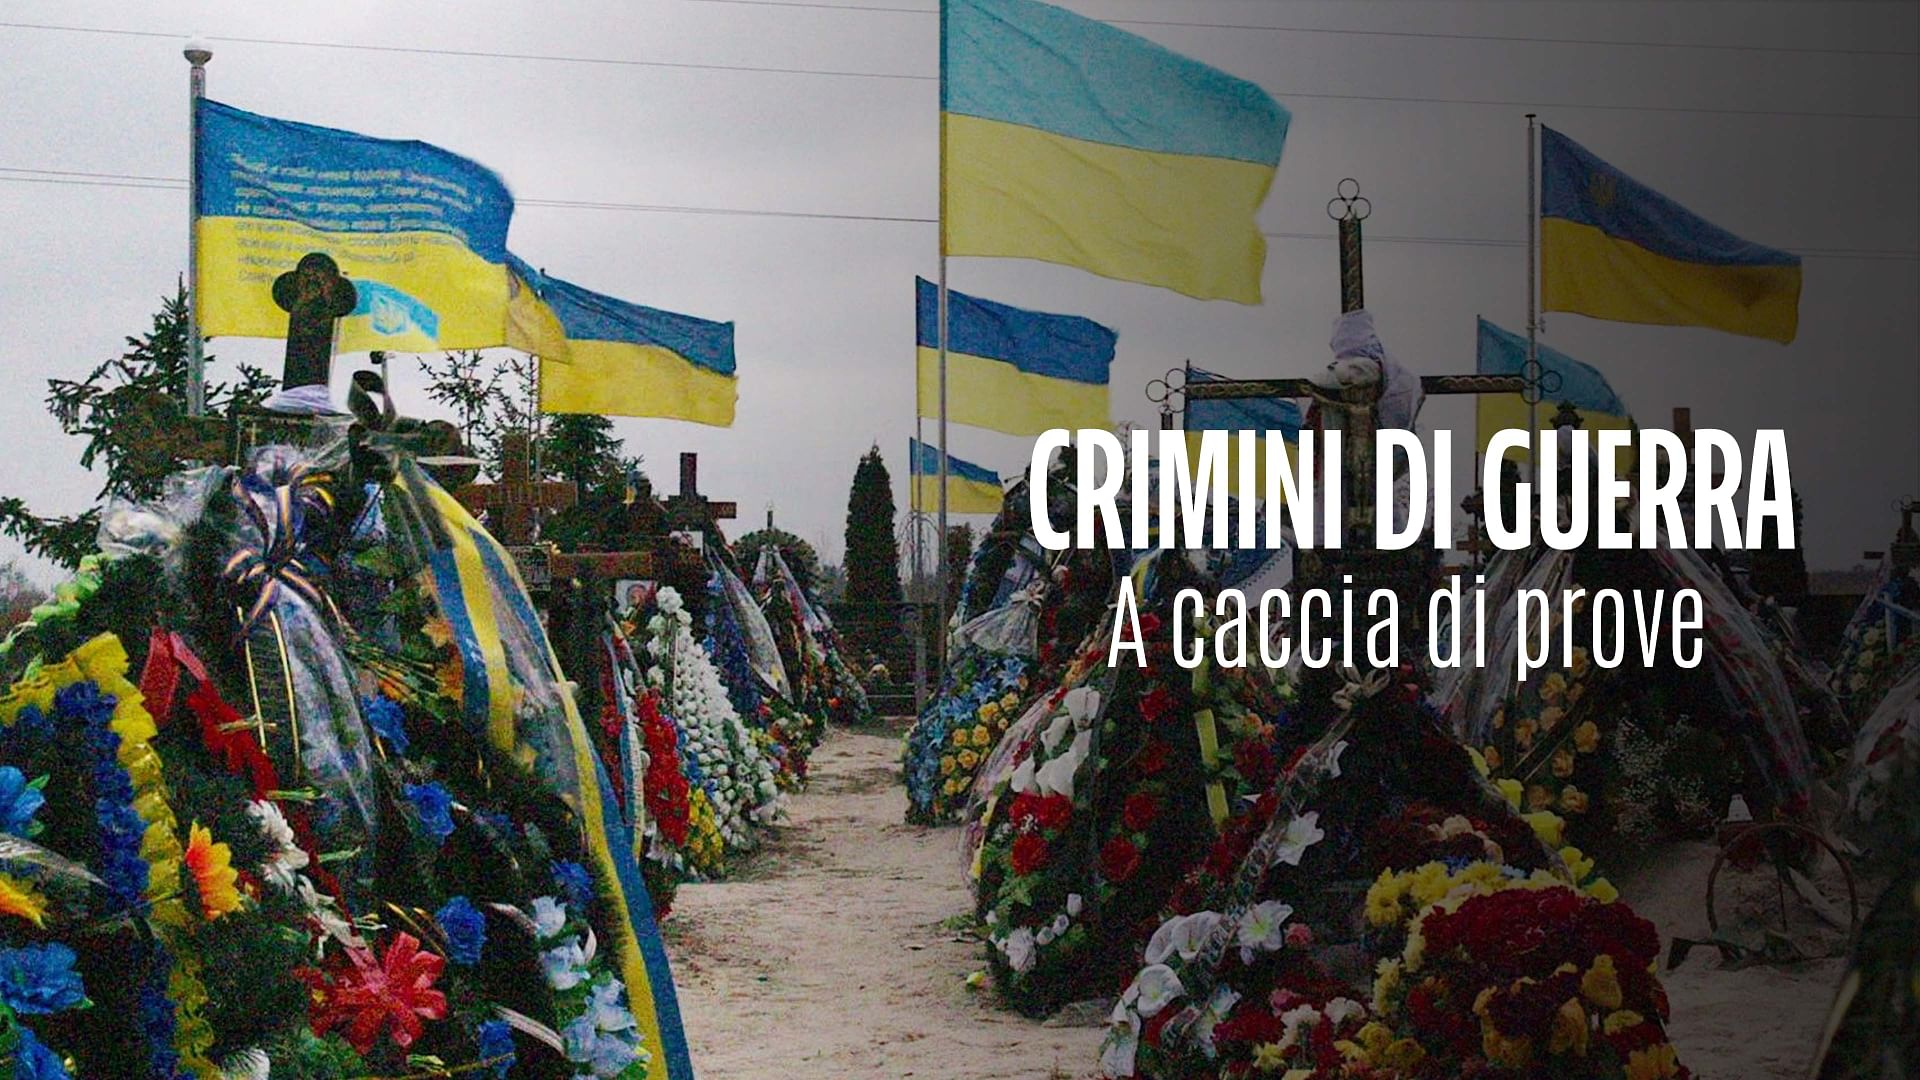 Re: sguardi sulla società - Ucraina: le prove dei crimini di guerra